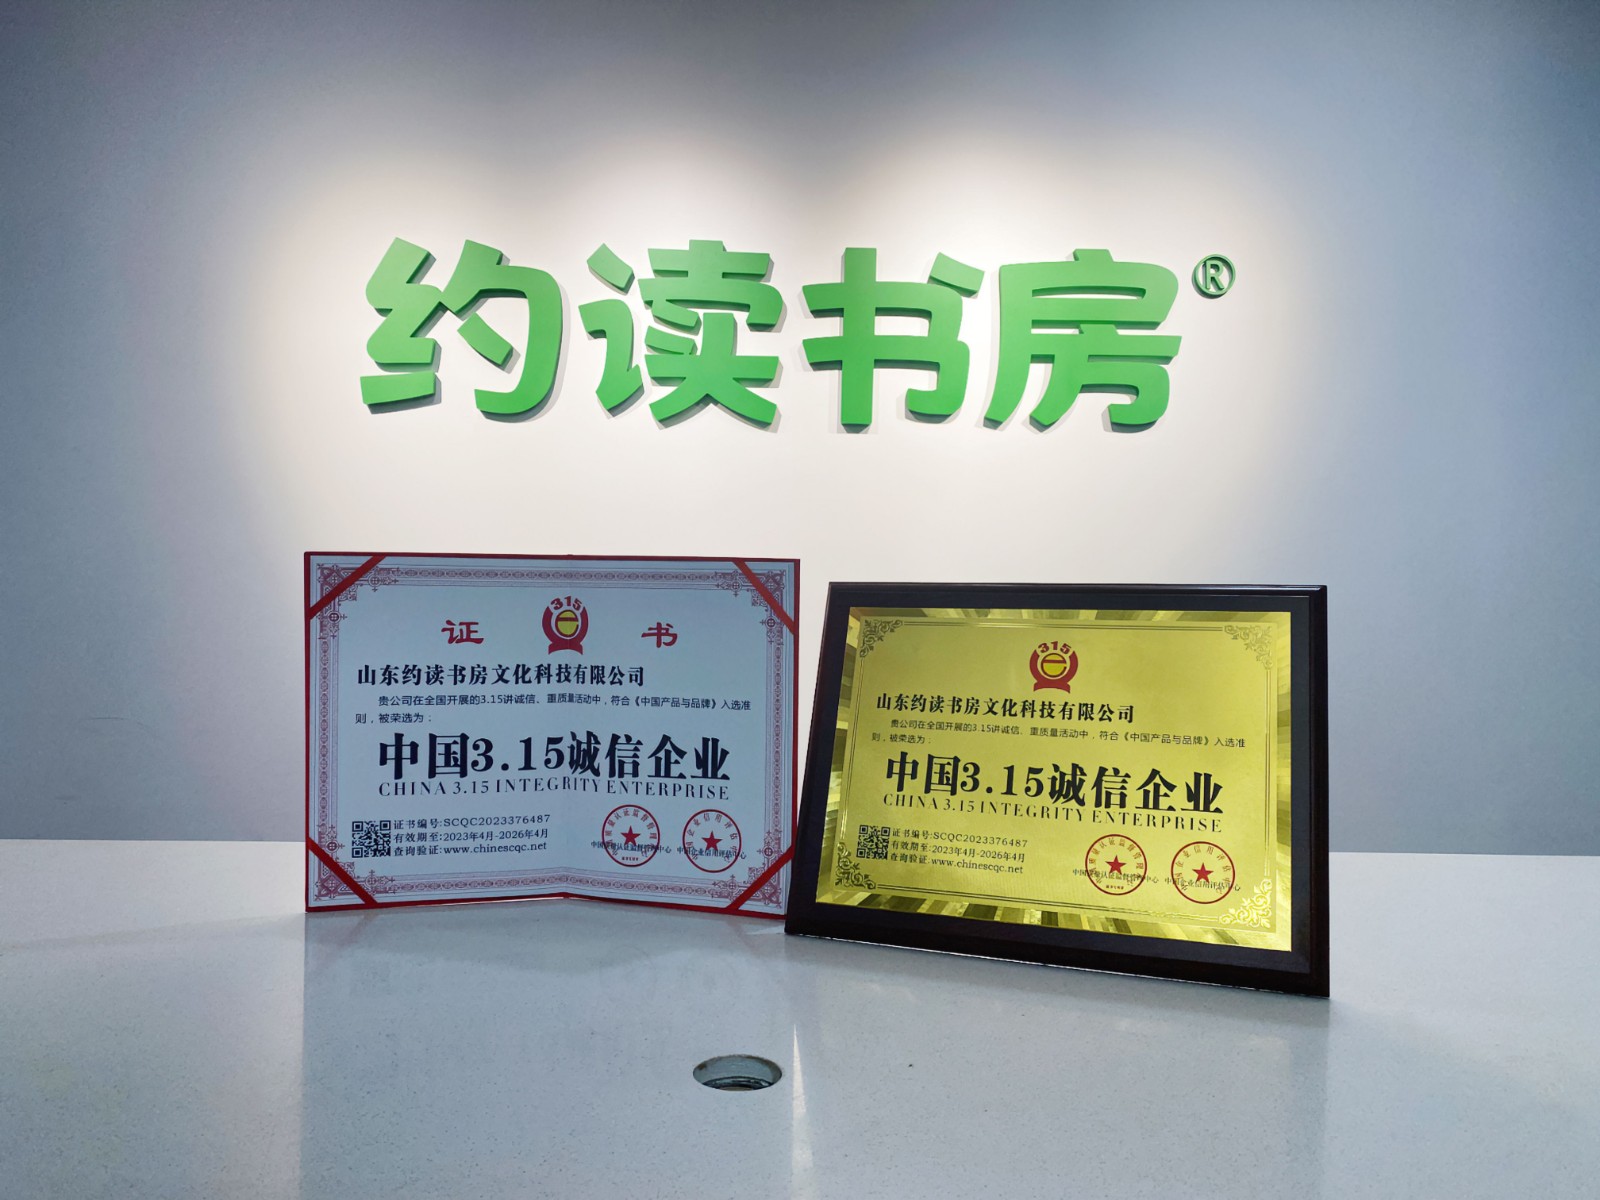 祝贺！约读书房被荣选为“中国3.15诚信企业”